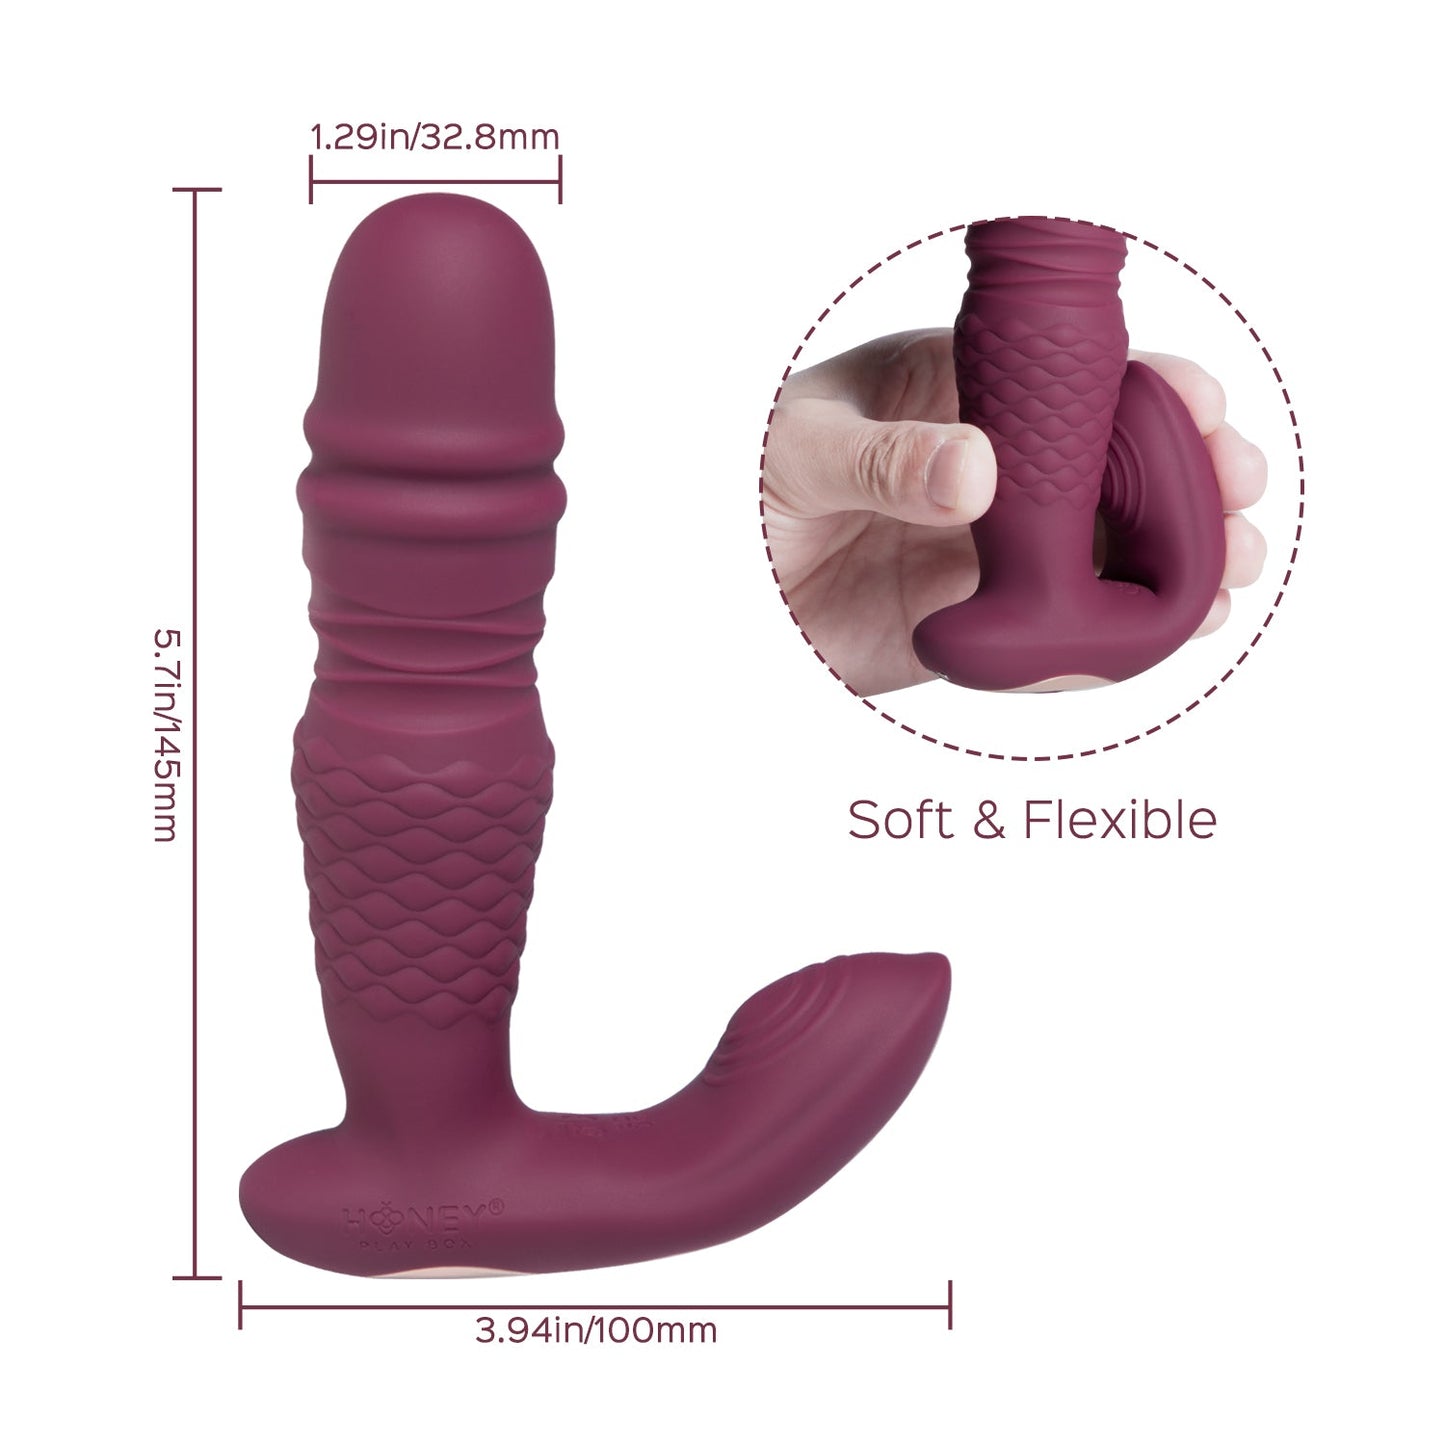 Vibromasseur point G et clitoris à poussée contrôlée par application RYDER